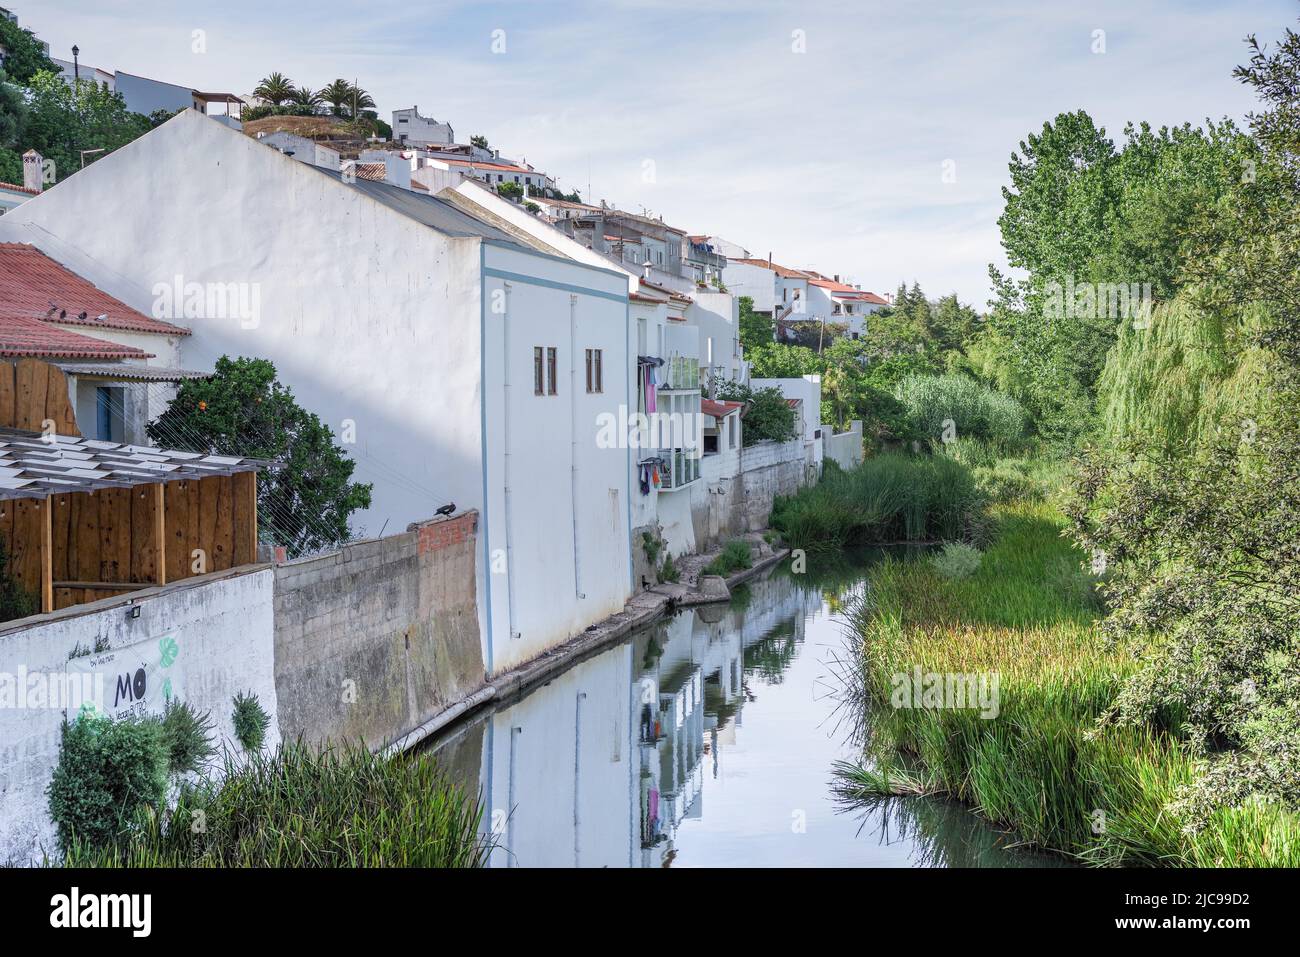 Maisons reflétées dans les eaux calmes de la rivière Aljezur - Aljezur (Algarve, Portugal) Banque D'Images